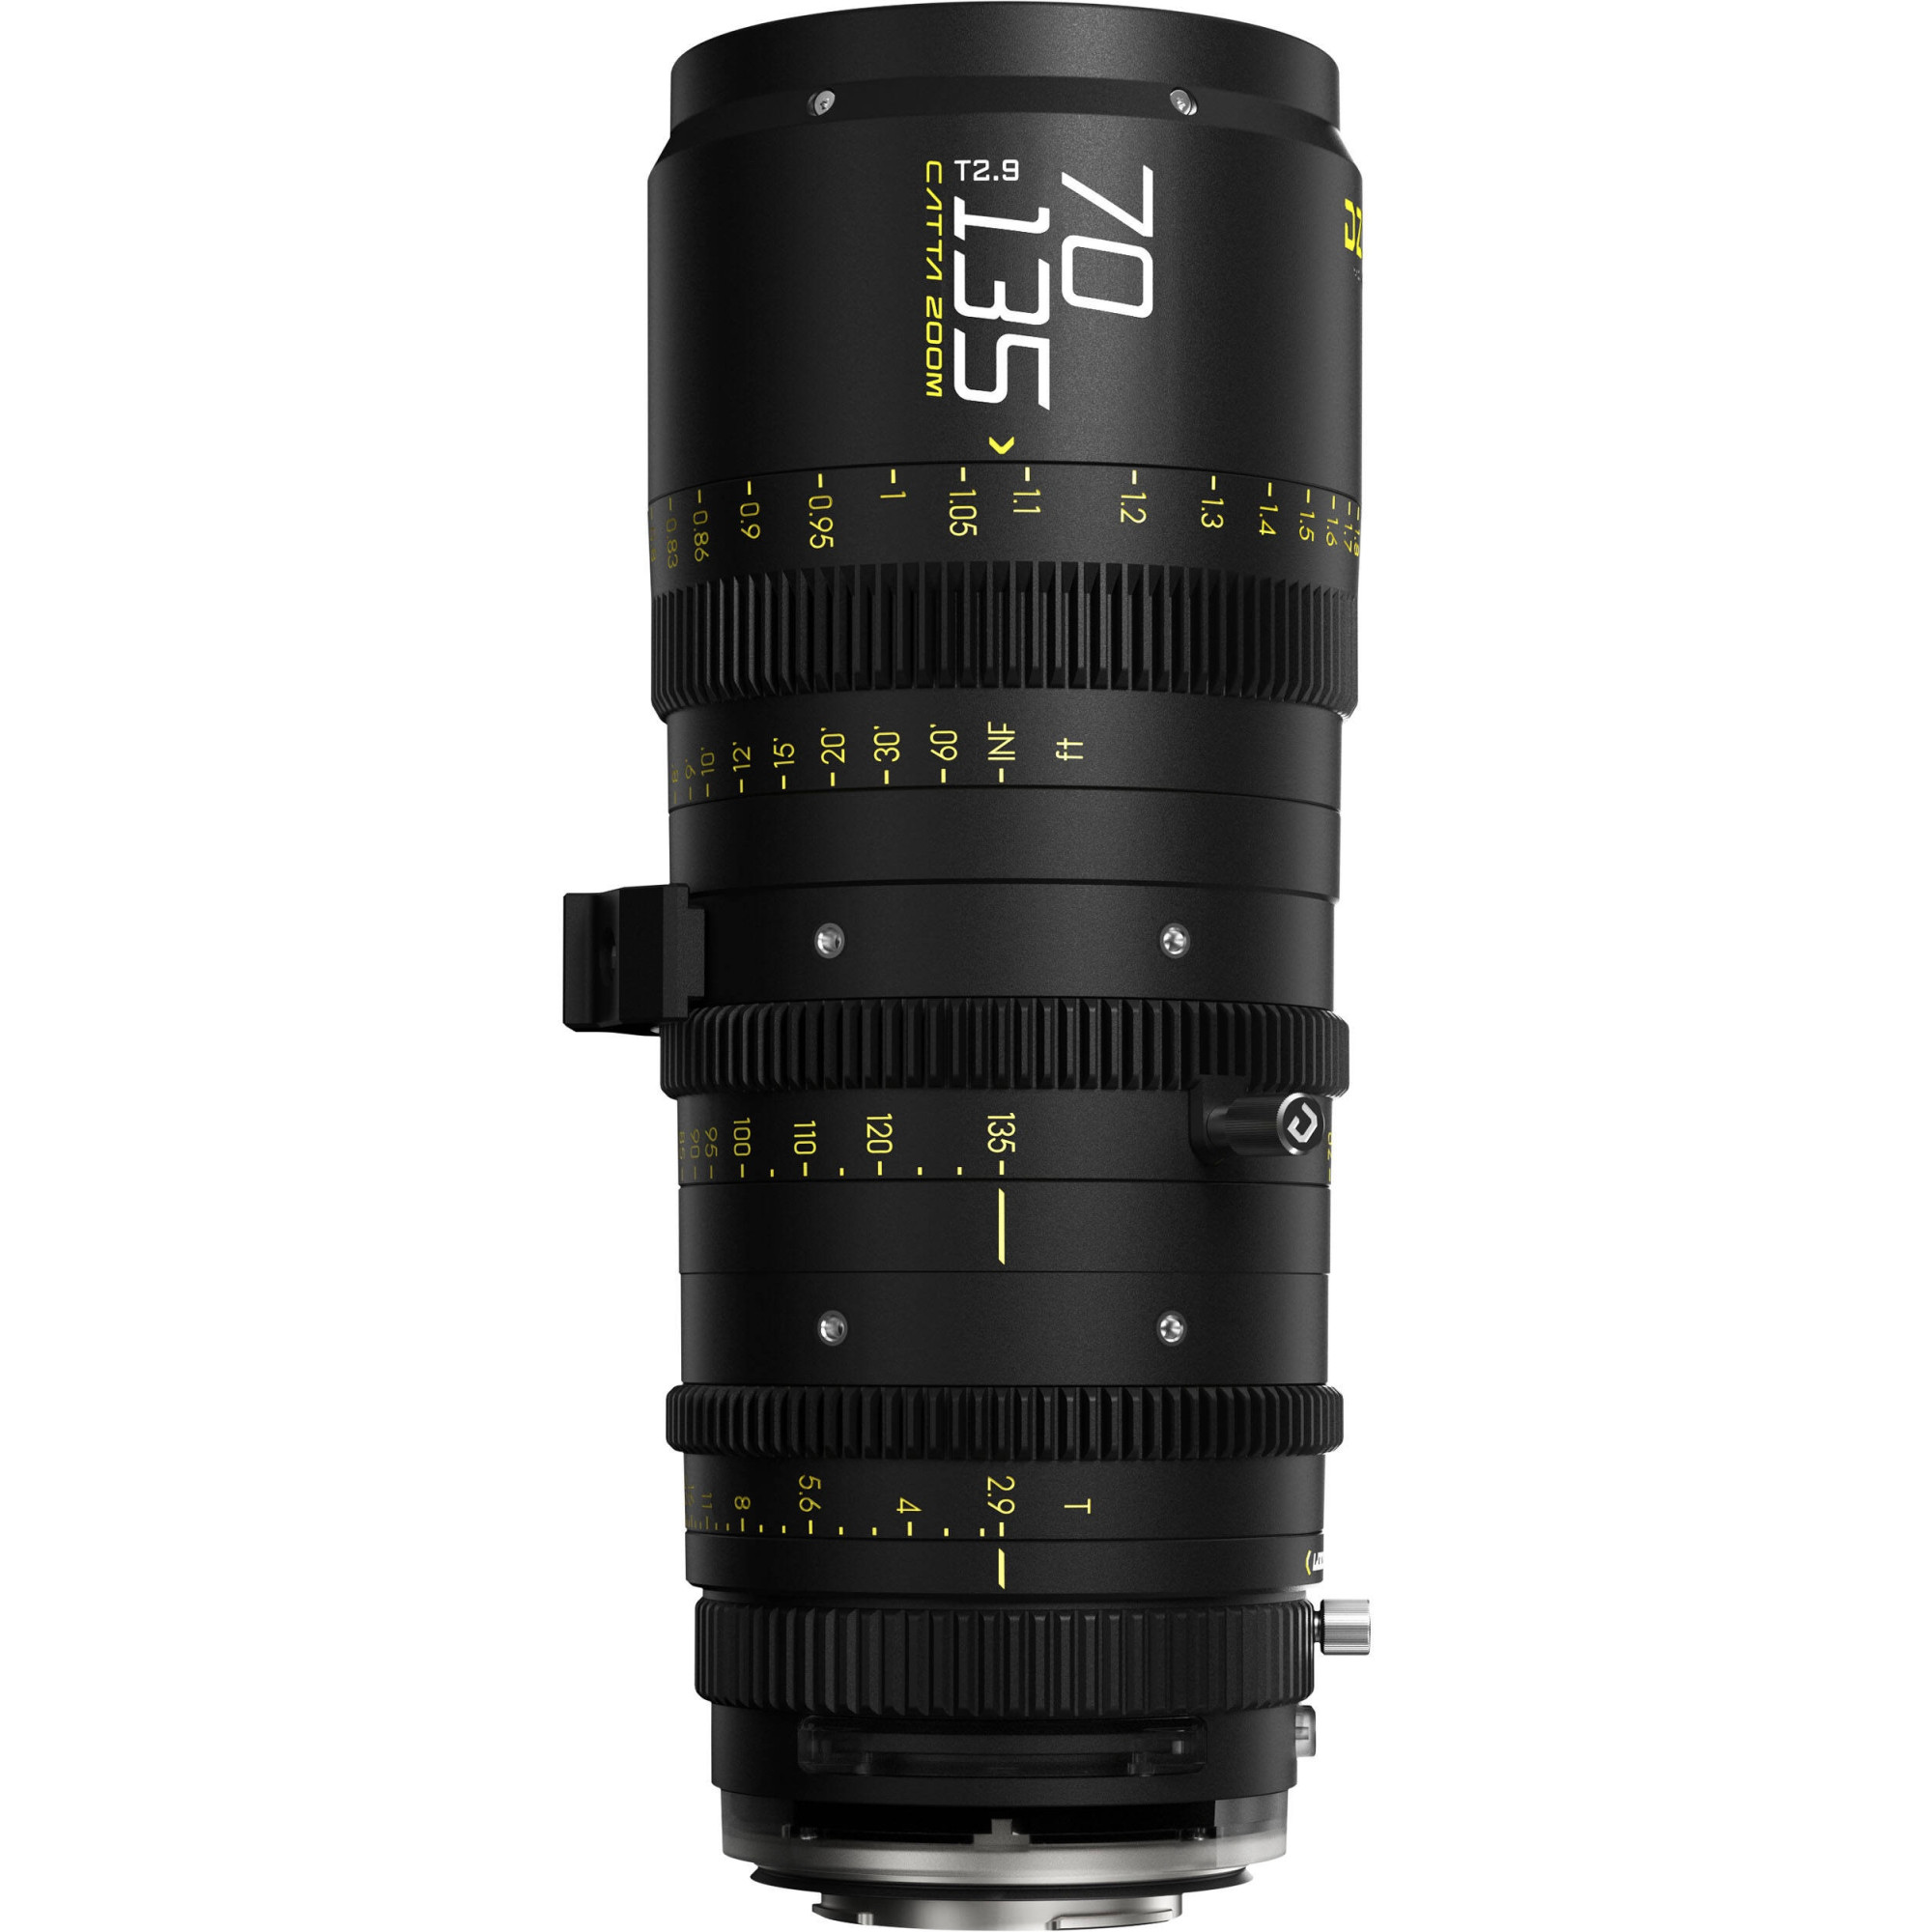 DZOFilm Catta Zoom 70-135mm T2.9 Black Sony E Mount (FF) | Full Frame Parfocal Cine Lens